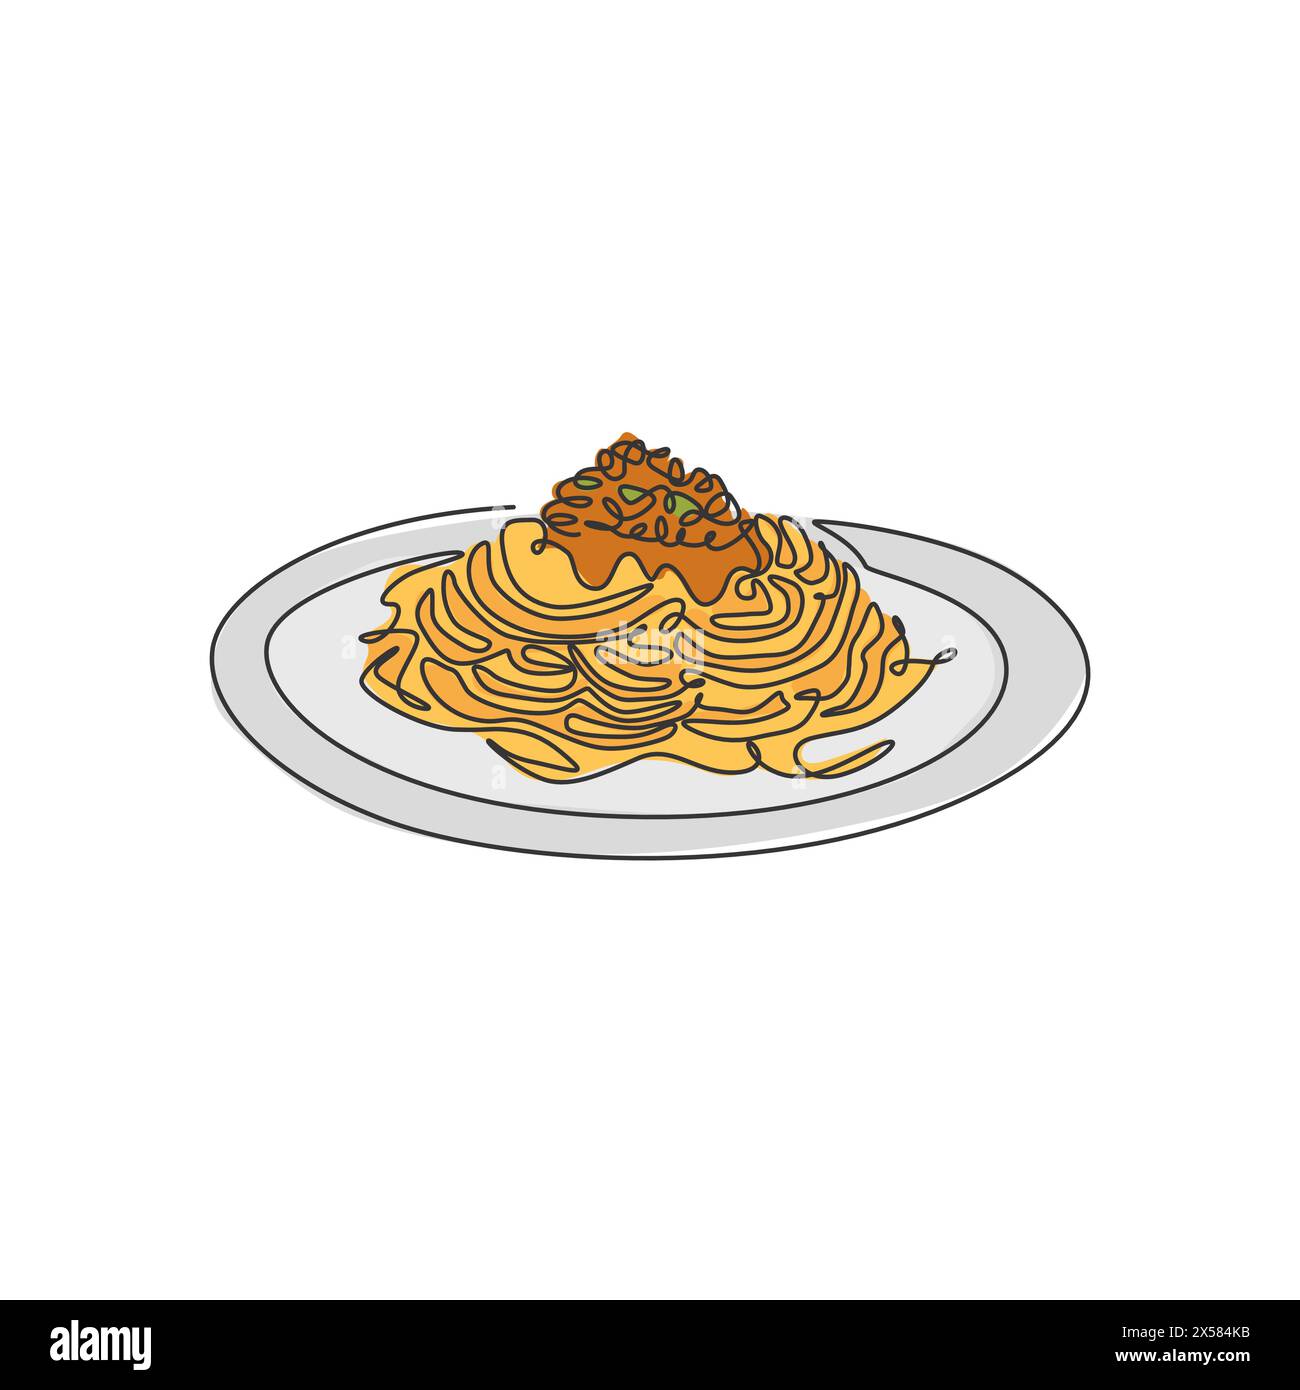 Disegno a linea singola continua dell'etichetta stilizzata con il logo degli spaghetti italiani. Ristorante italiano con pasta e spaghetti. Design vettoriale moderno a una linea Illustrazione Vettoriale